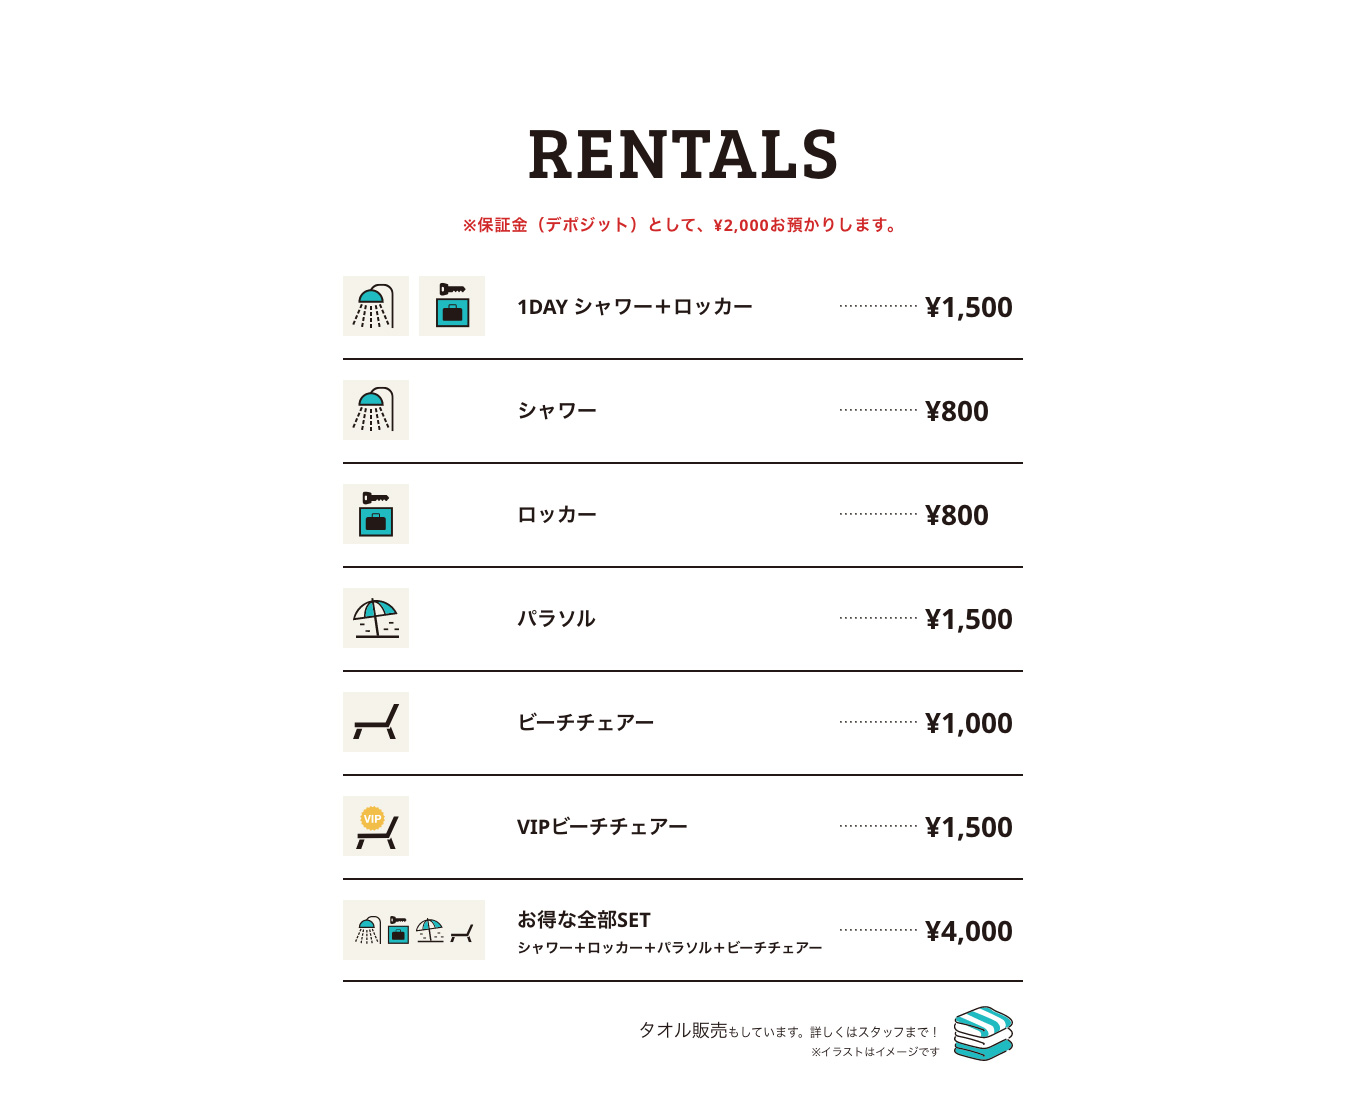 RENTALS ※保証金（デポジット）として、 ¥2,000お預かりします。 1DAY シャワー＋ロッカー ¥1,500 シャワー ¥800 ロッカー ¥800 パラソル ¥1,500 ビーチチェアー ¥1,000 VIPビーチチェアー ¥1,500 お得な全部SET シャワー＋ロッカー＋パラソル＋ビーチチェアー ¥4,000 タオル販売もしています。詳しくはスタッフまで！ ※イラストはイメージです